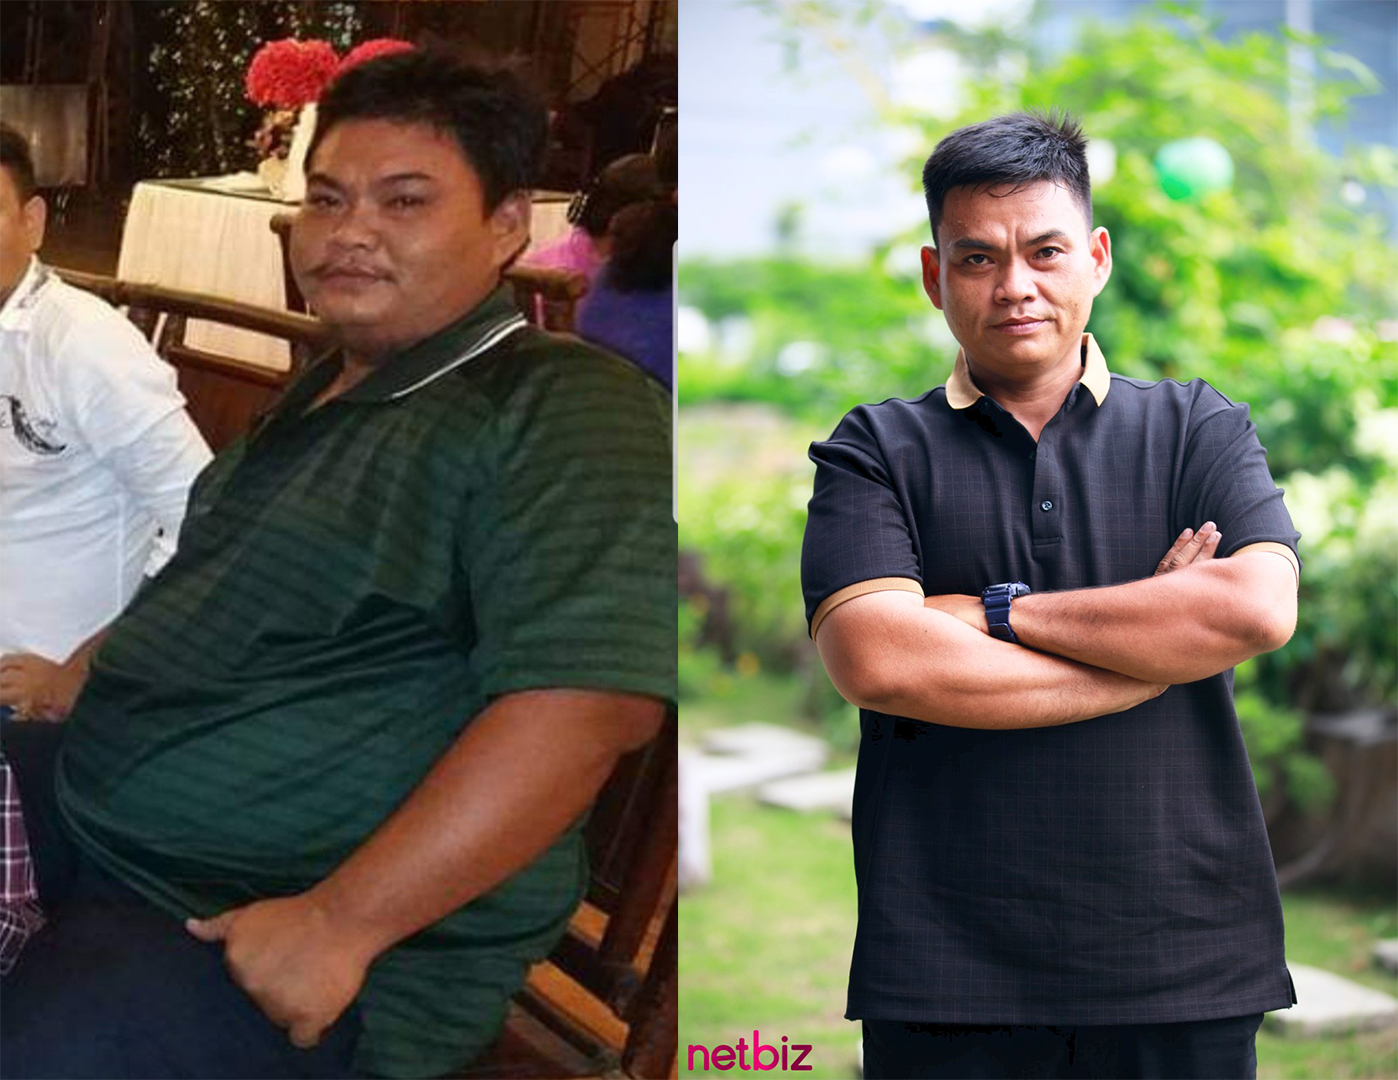 Chàng trai U40 nặng 170kg lột xác ngoạn mục sau khi giảm cân, đến show hẹn hò tìm hạnh phúc mới